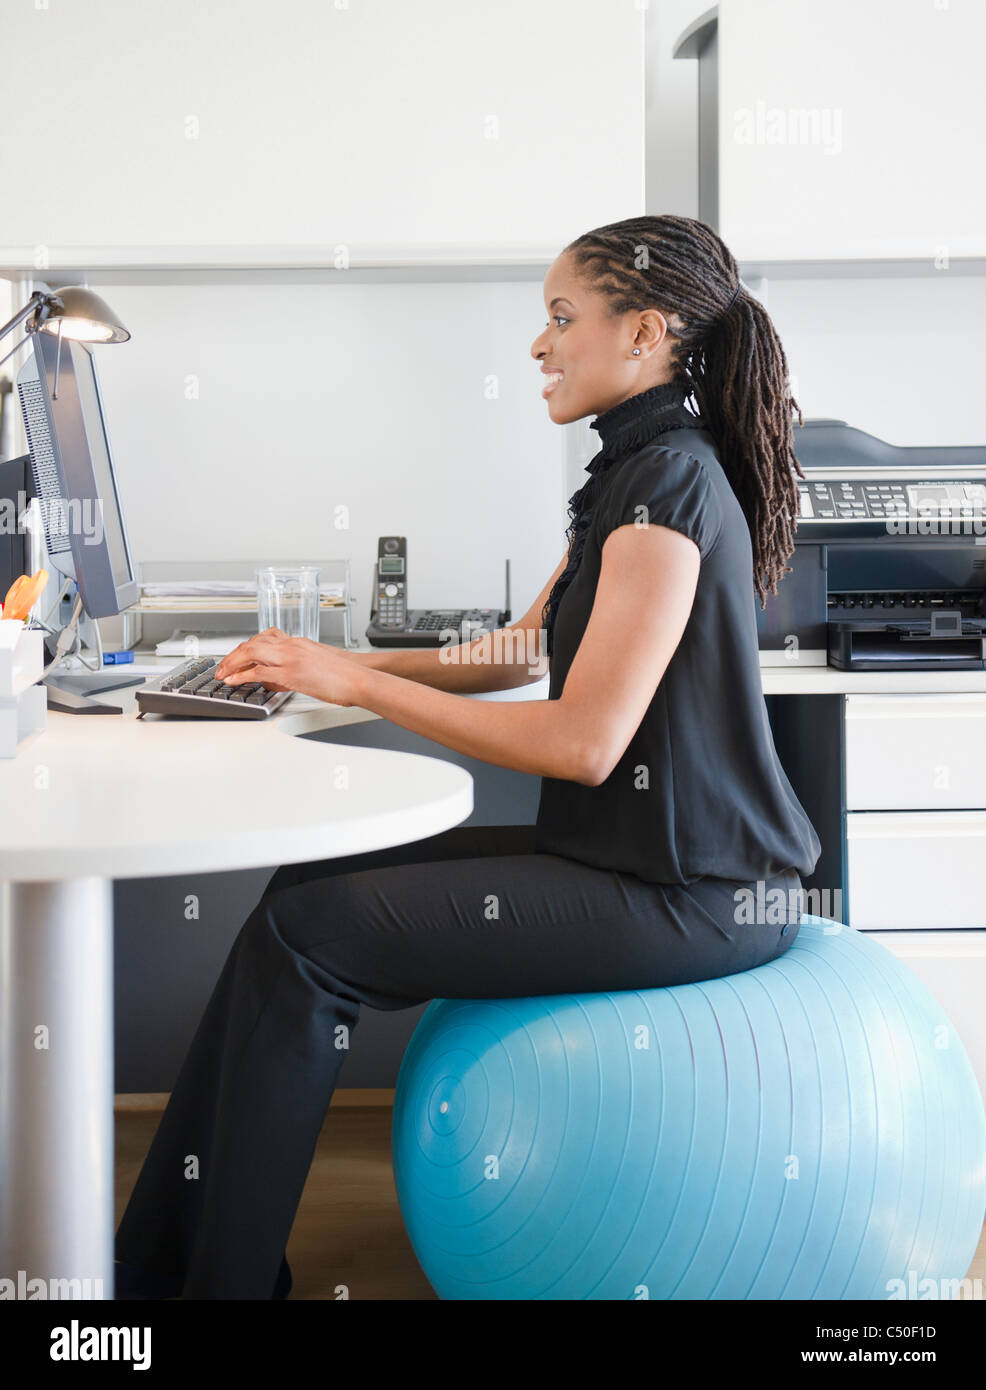 Afrikanische amerikanische Frau auf Gymnastikball am Schreibtisch sitzend Stockfoto